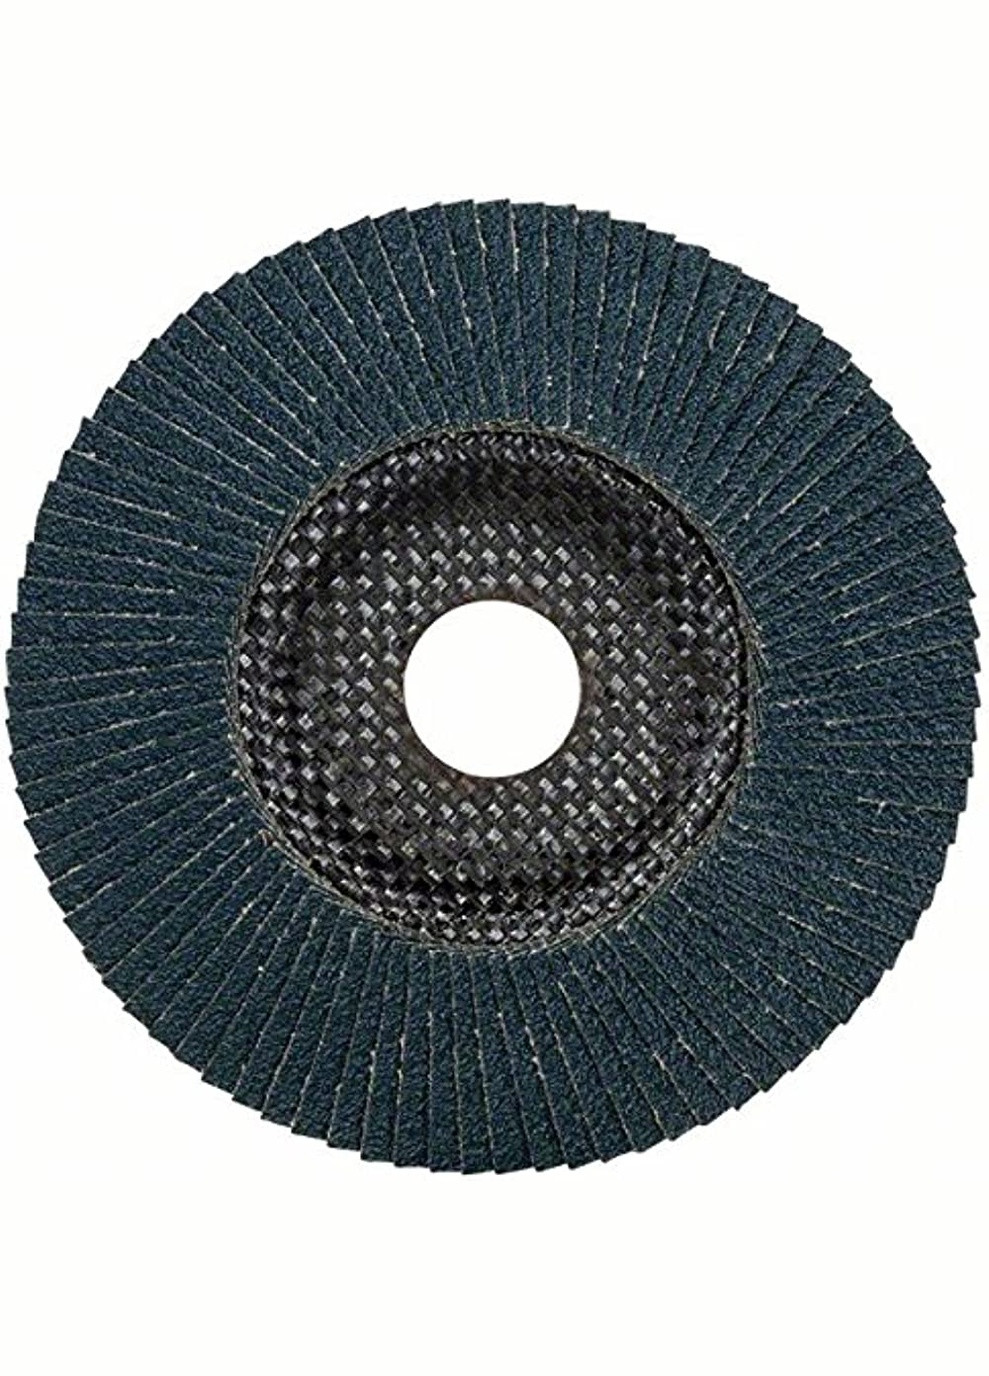 Лепестковый шлифовальный диск (125 мм, P60, 22.23 мм) Best For Metal выпуклый круг (20942) Bosch (271985557)